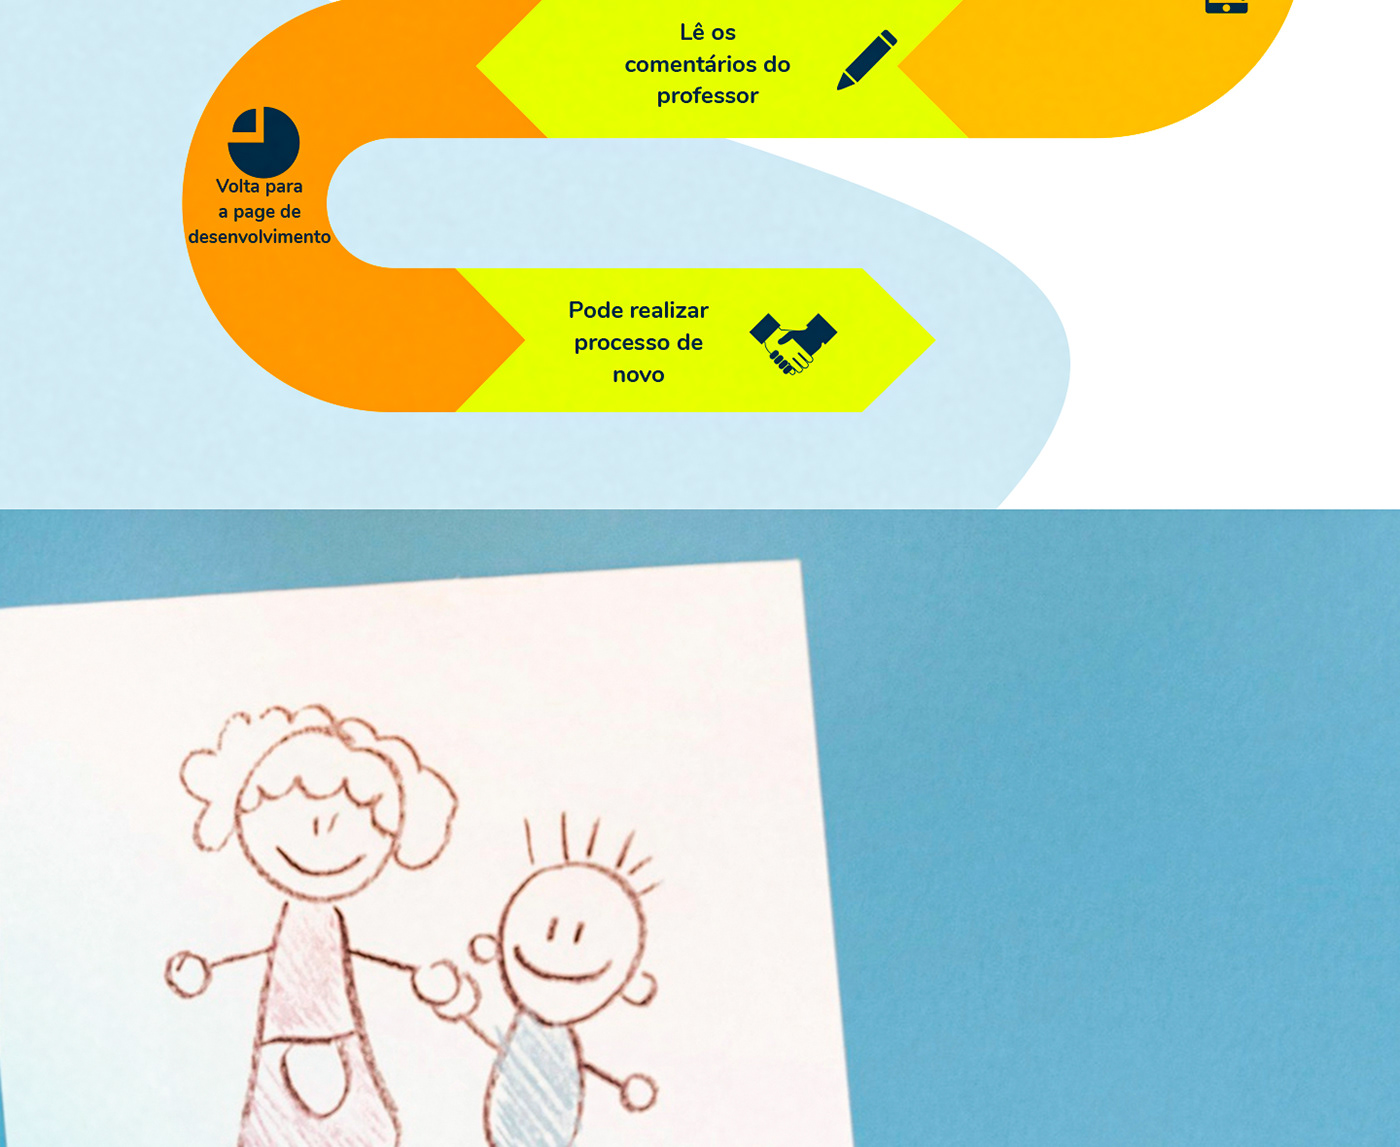 UI/UX user interface Mobile app user experience Figma Education criança kids Case Study app design